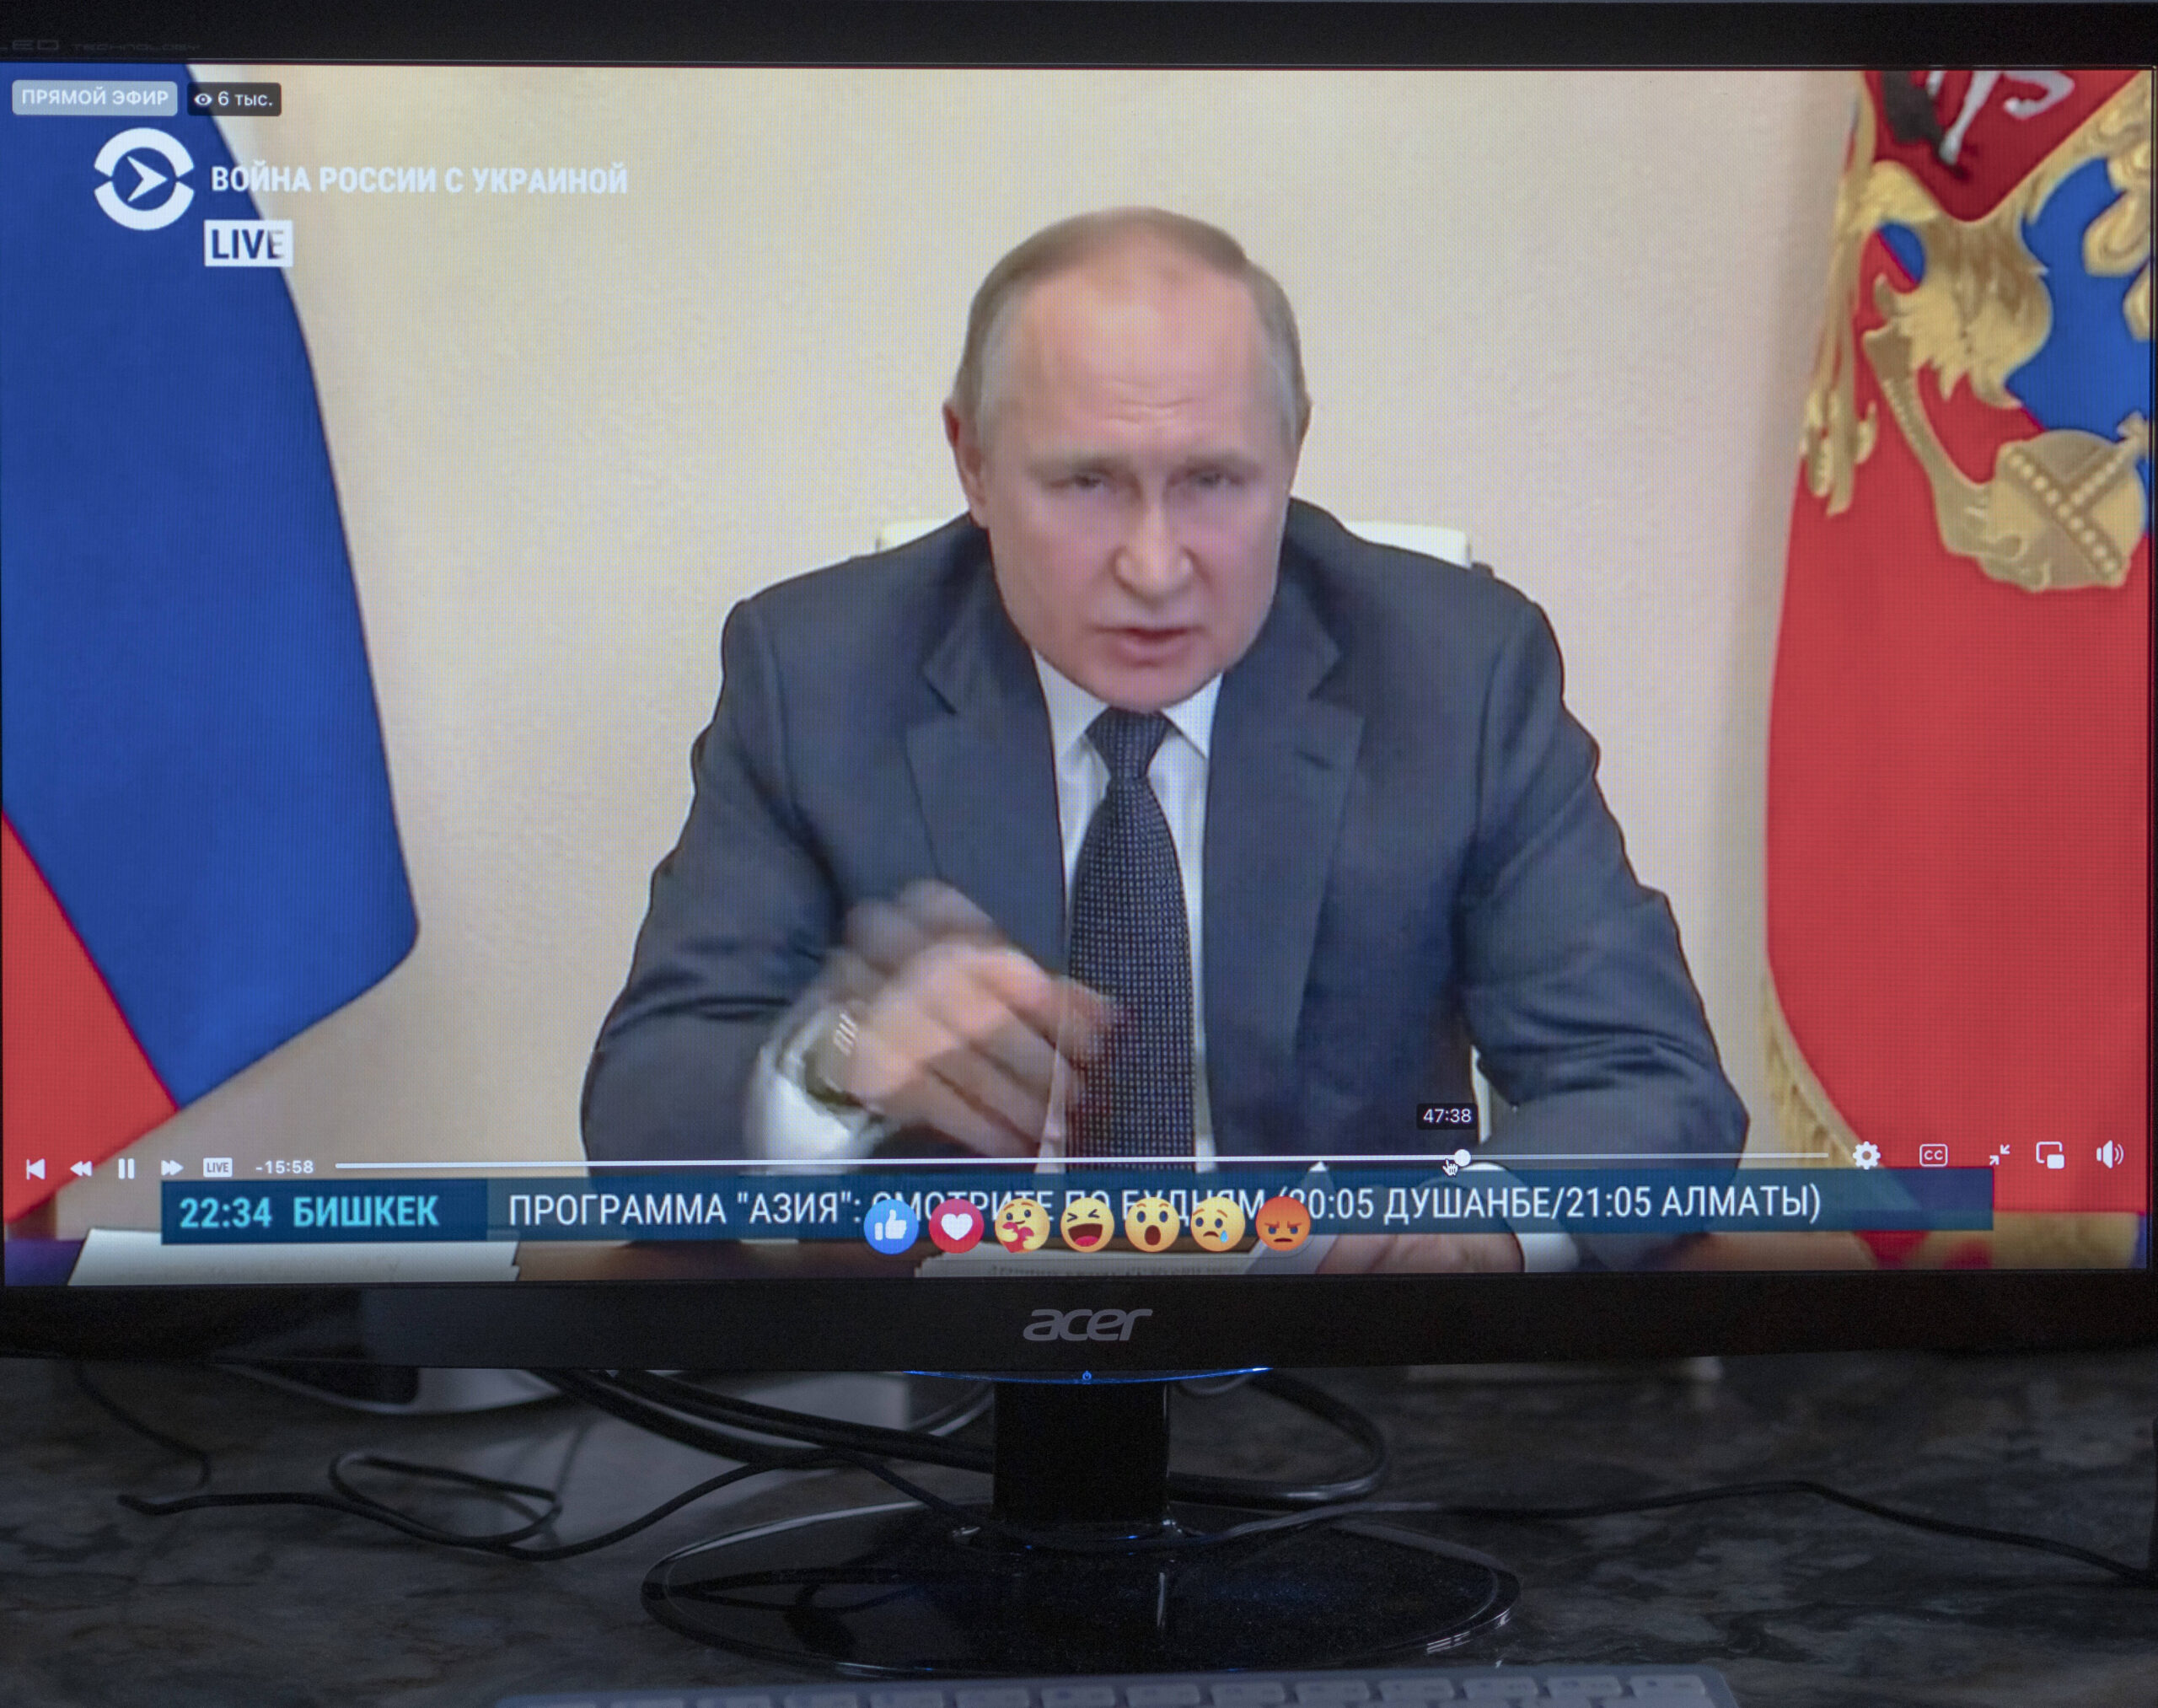 In einer im Staatsfernsehen übertragenen Rede attackierte Russlands Präsident Putin westliche Staaten und eigene Landsleute.